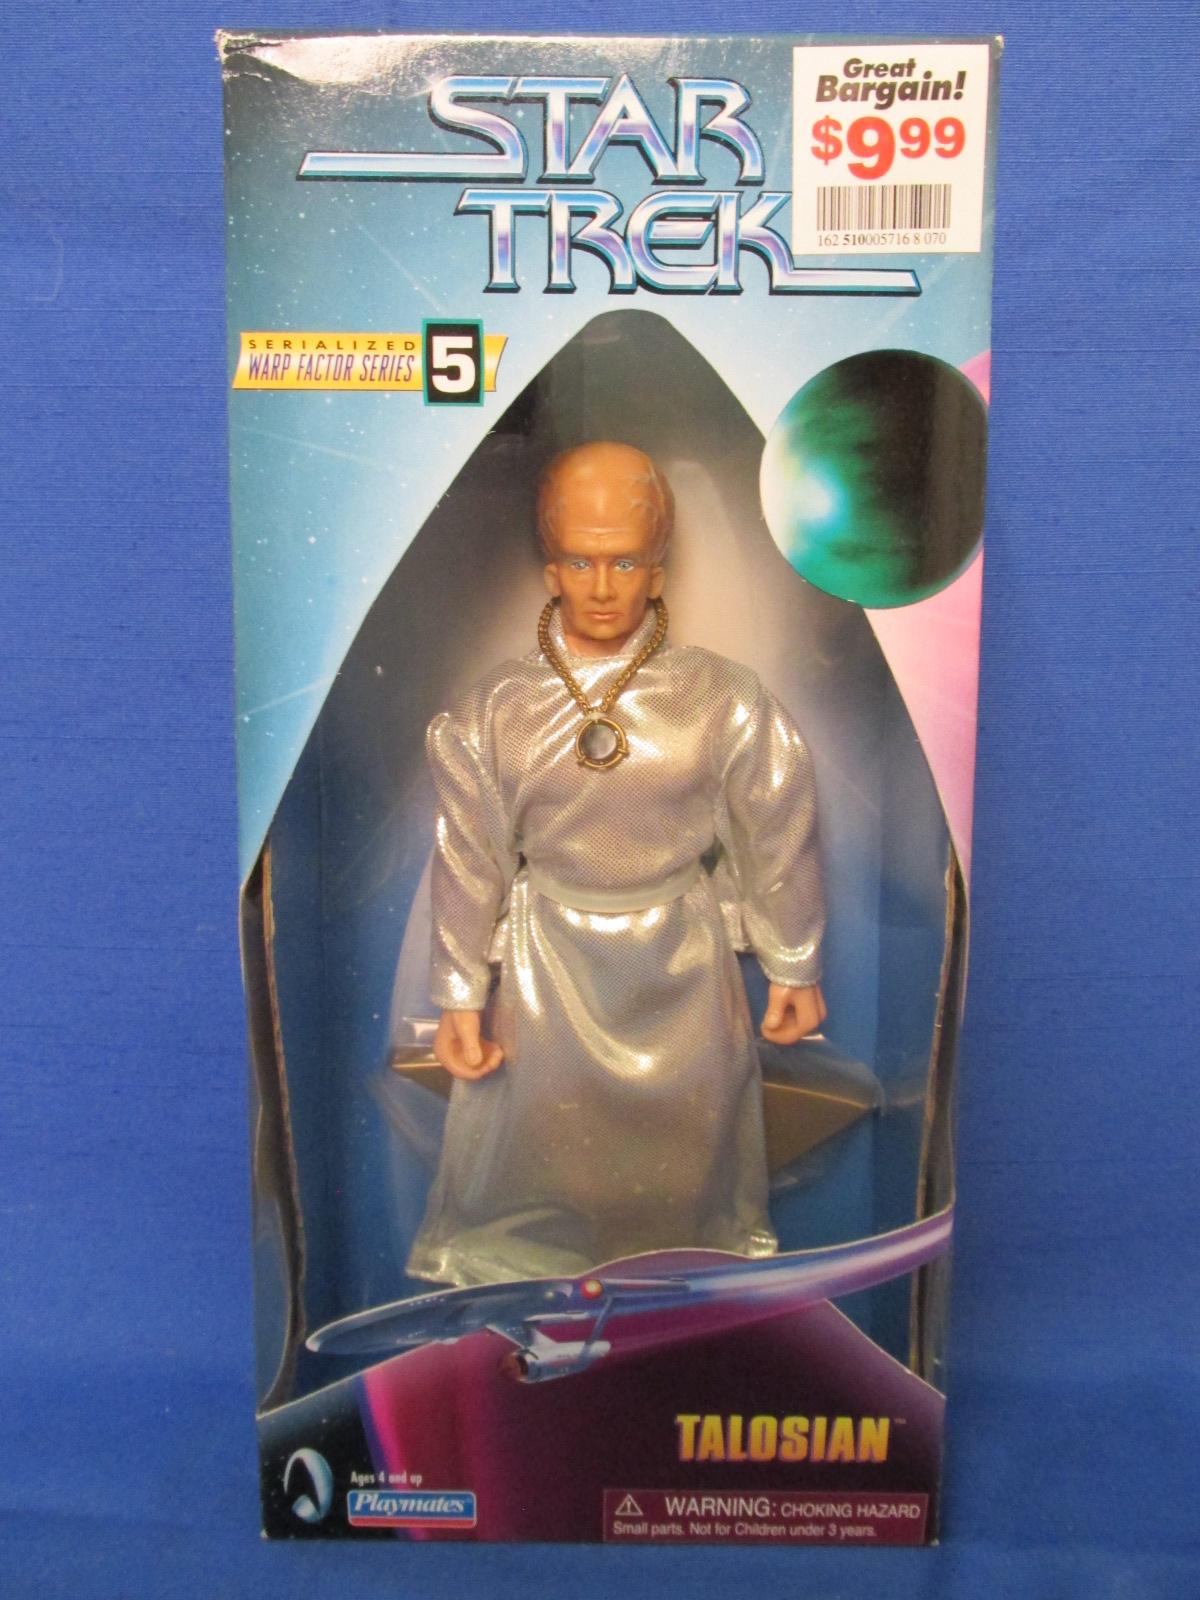 Star Trek 9” Figure – NIB – Warp Factor Series 5 – Talosian